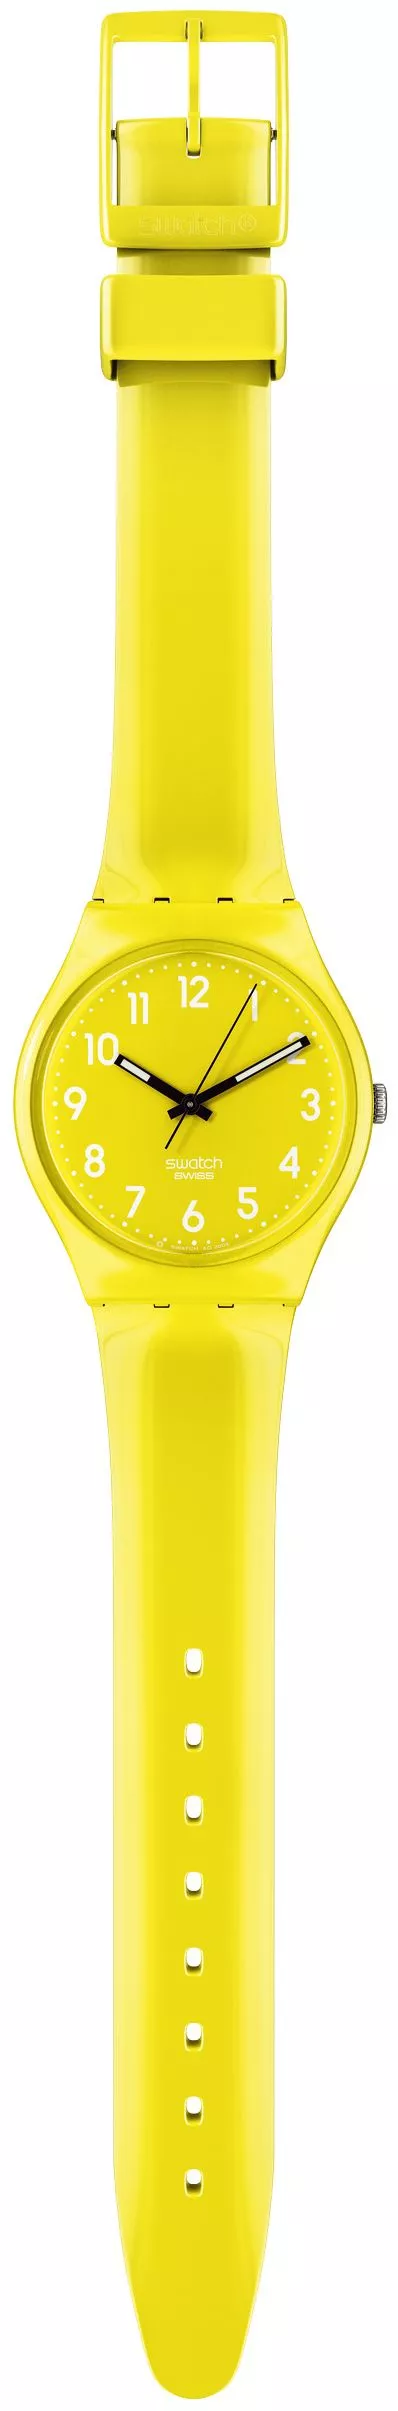 Zegarek Swatch Lemon Time GJ128